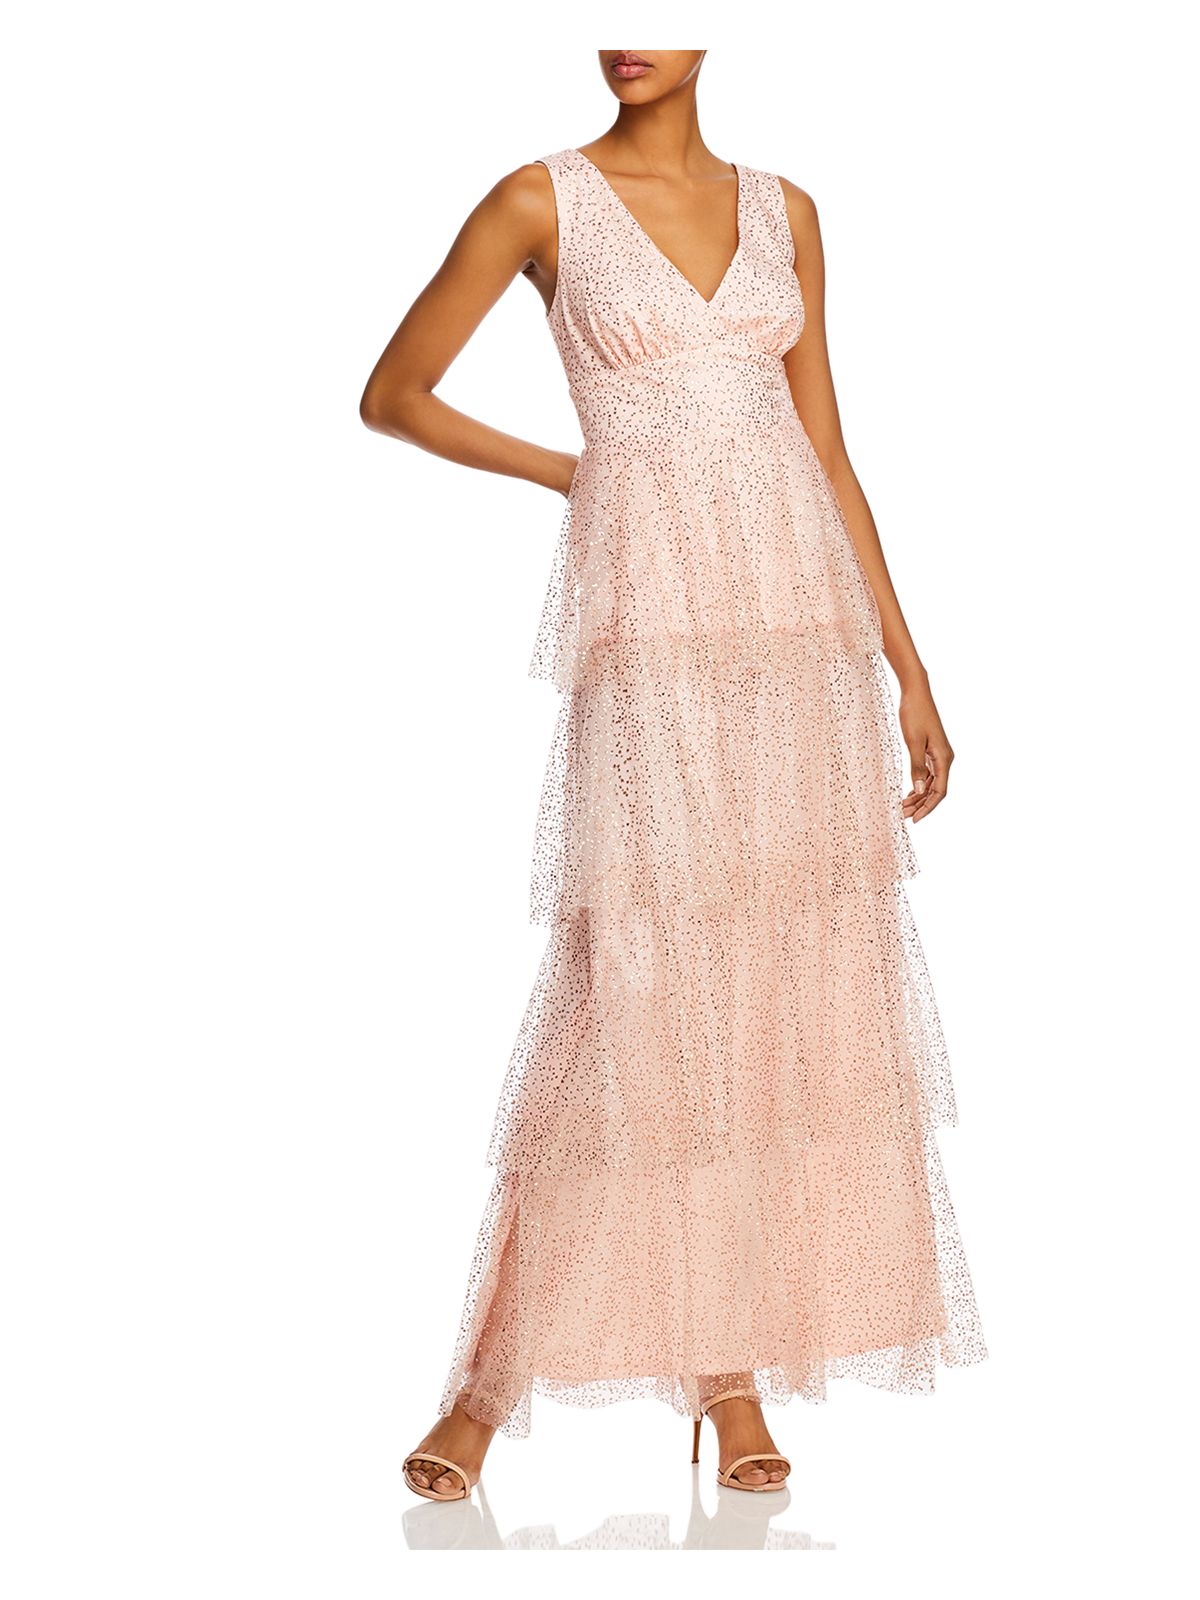 LAUNDRY Womens Pink Ruffled Sheer Added Speckle Sleeveless V Neck Full-Length Formal Fit + Flare Dress 2